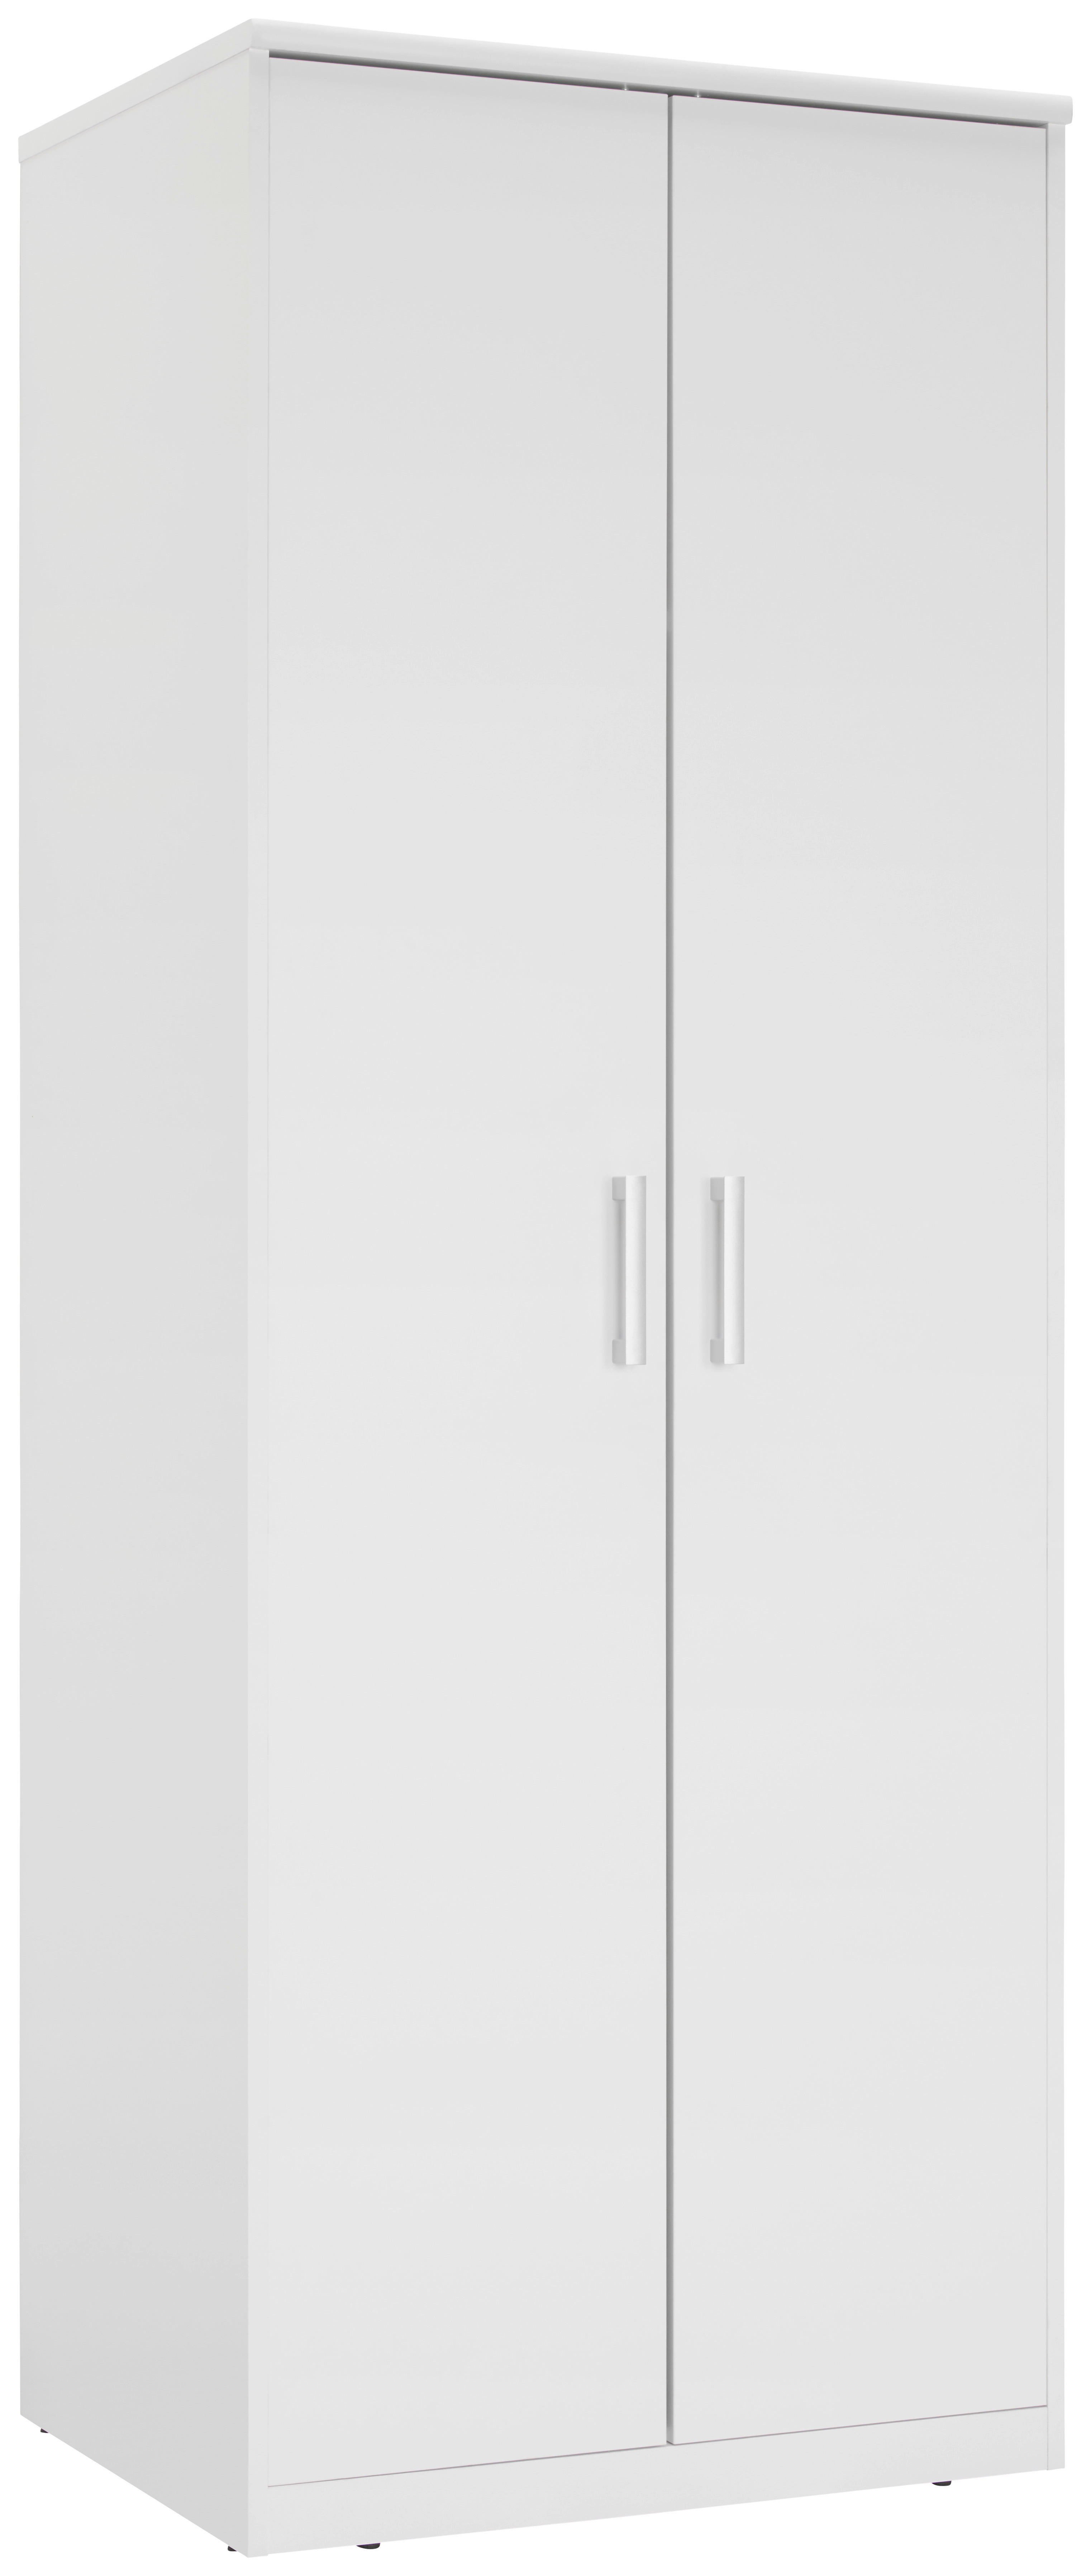 KLEIDERSCHRANK 2-türig Weiß  - Silberfarben/Weiß, Basics, Holzwerkstoff/Kunststoff (72/194/54cm) - Xora